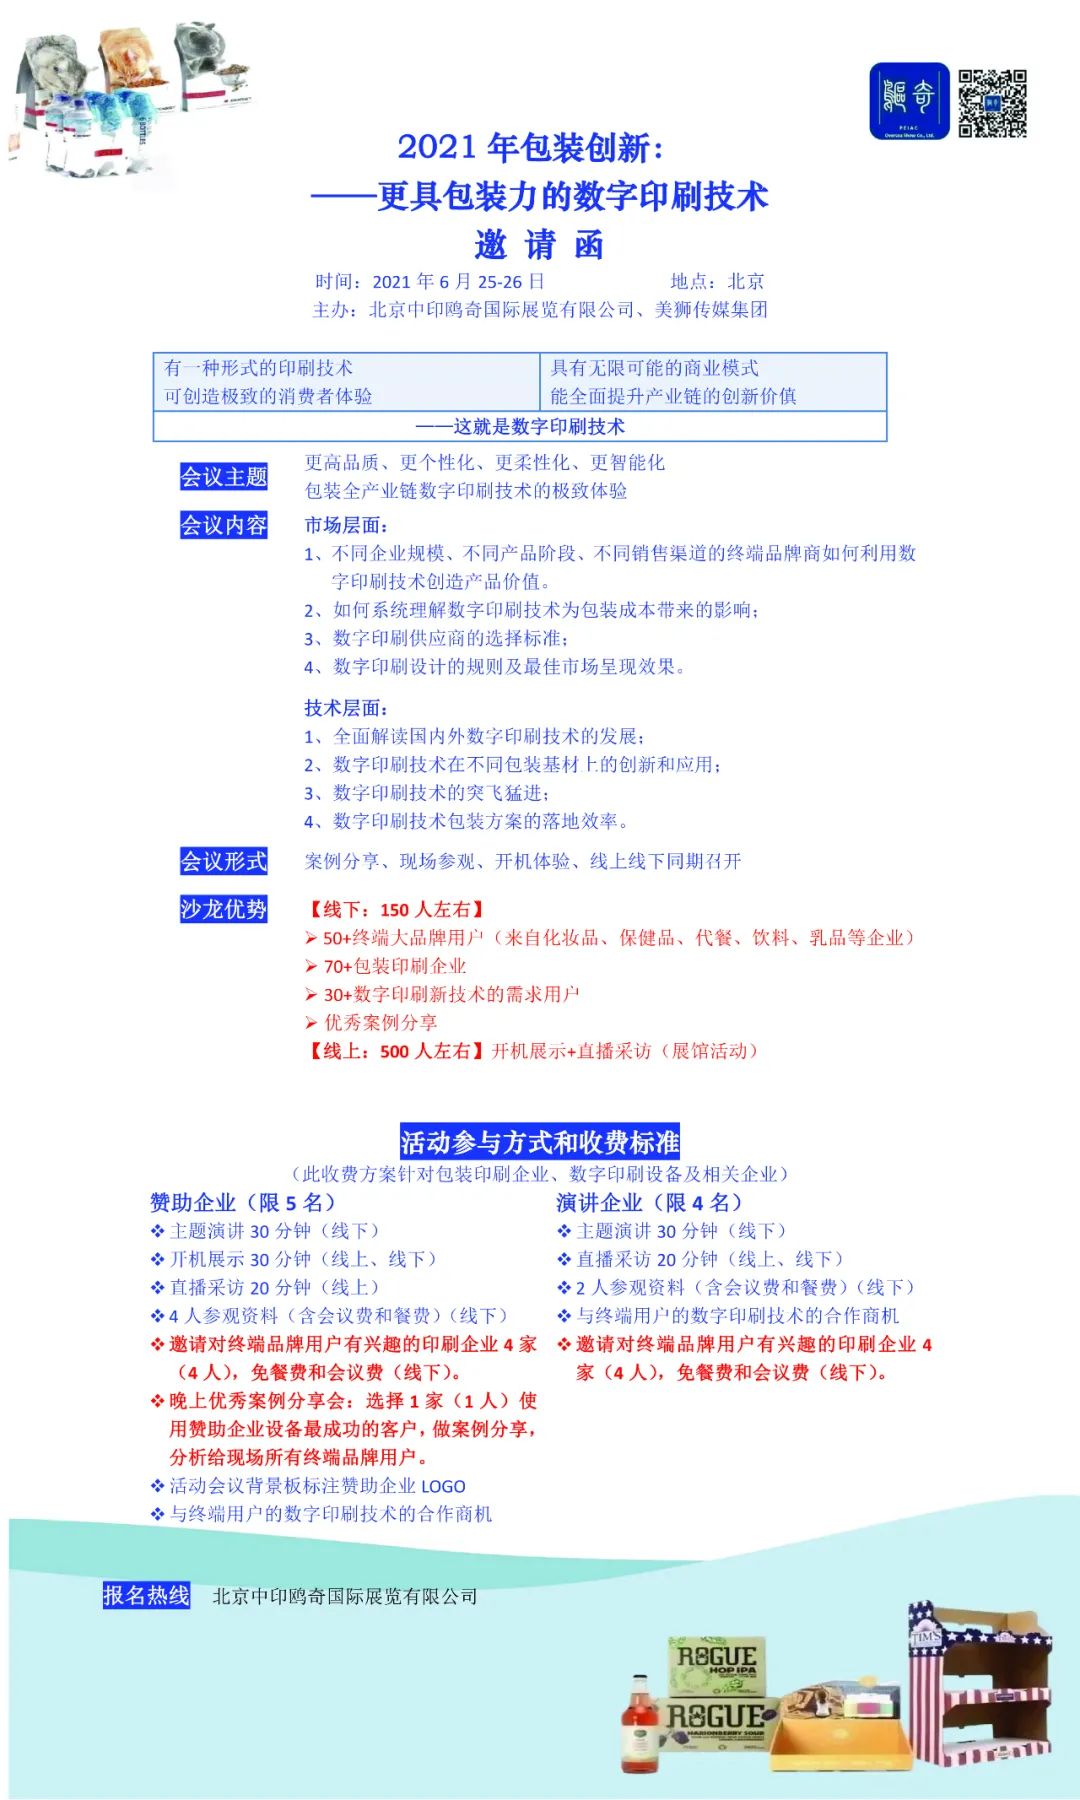 包装与印刷工程学院_上海记事本印刷定制_印刷包装 定制